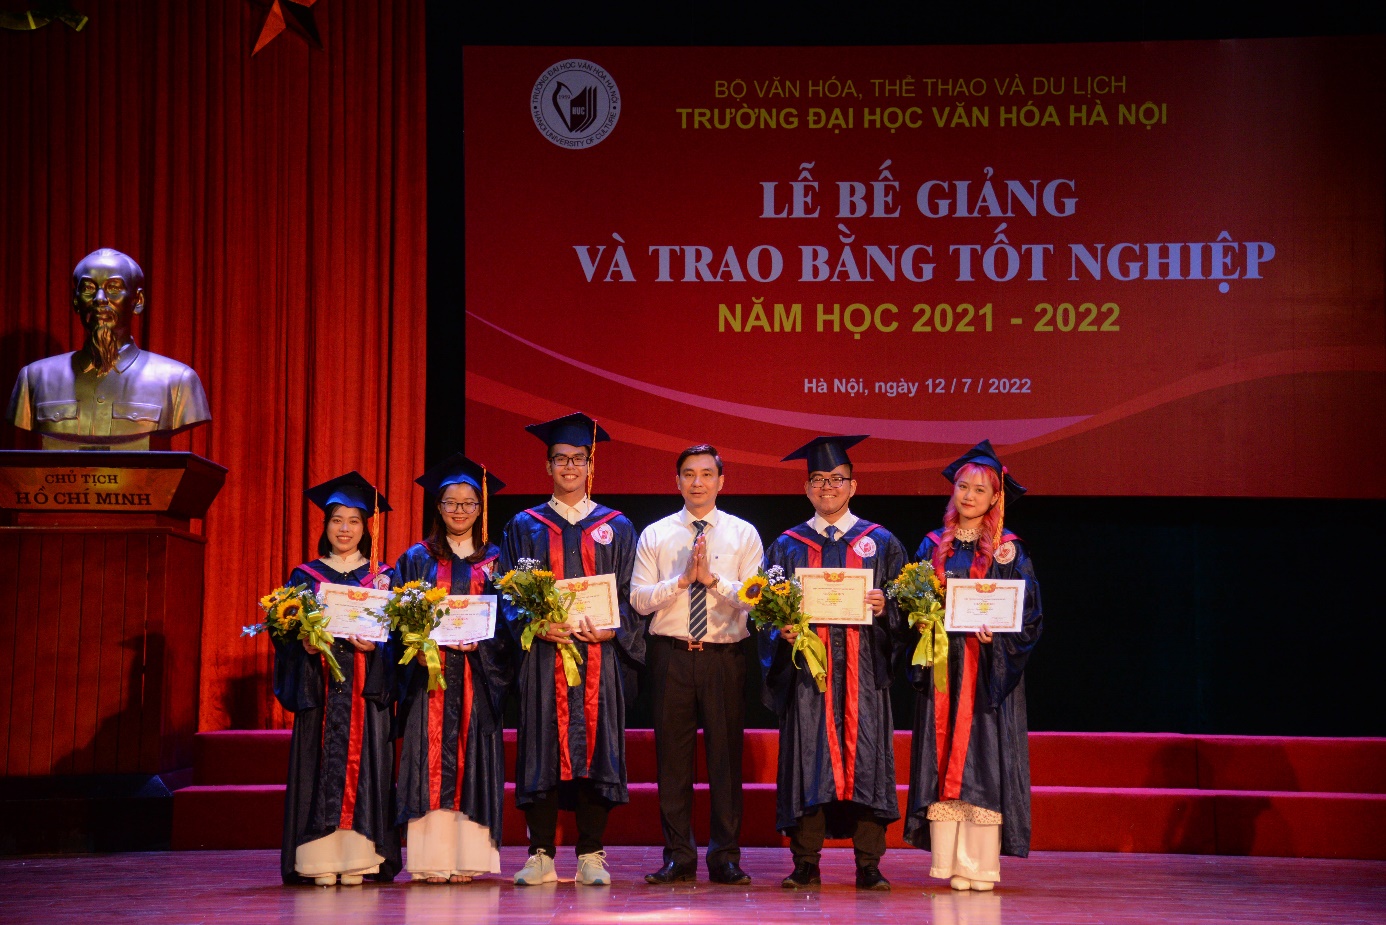 Trường Đại học Văn hóa Hà Nội tổ chức lễ bế giảng và trao bằng tốt nghiệp năm học 2021 – 2022 - Ảnh 6.